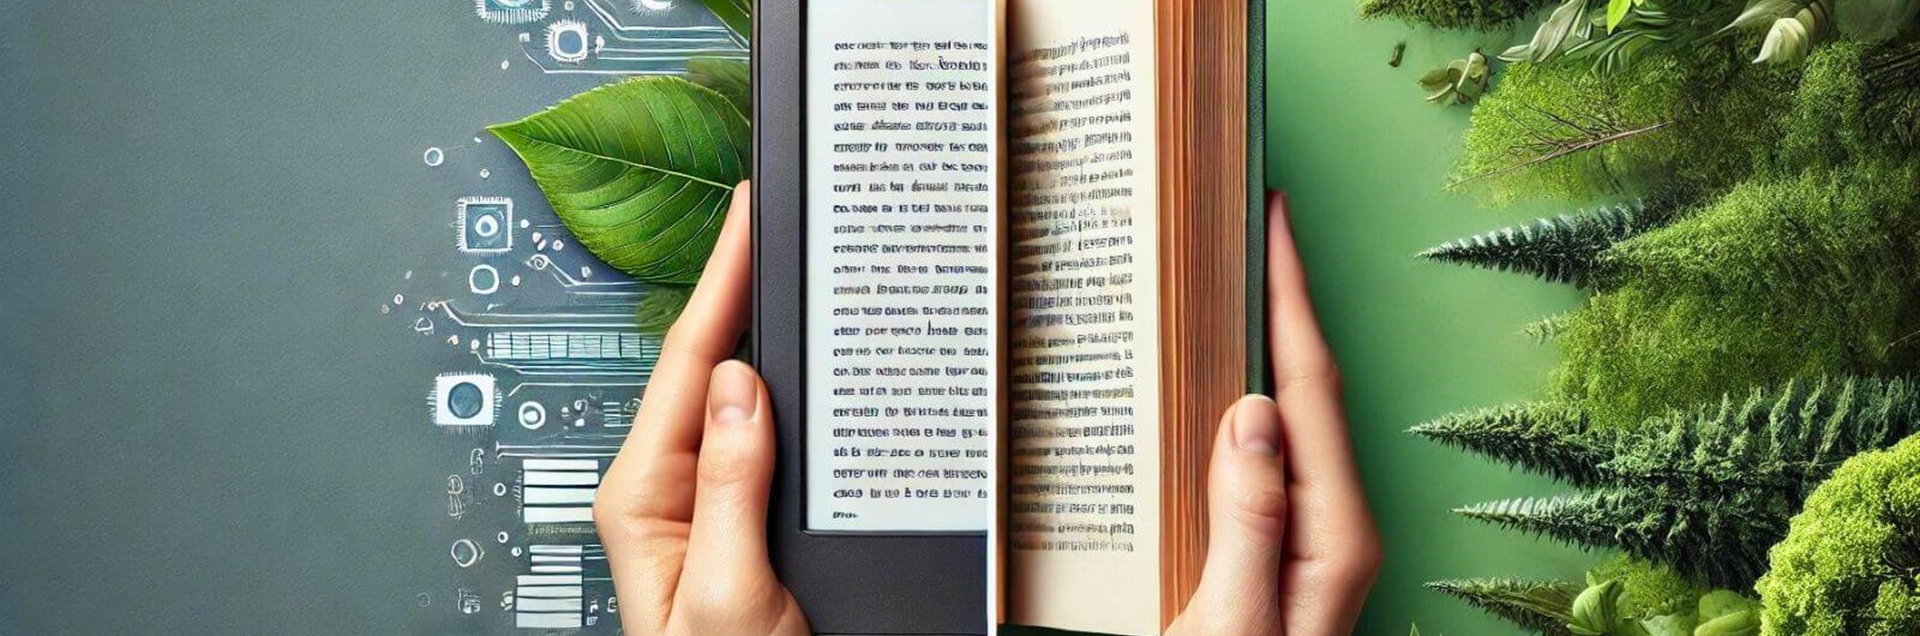 Libros electrónicos vs libros en papel: ¿cuál es la opción más sostenible?